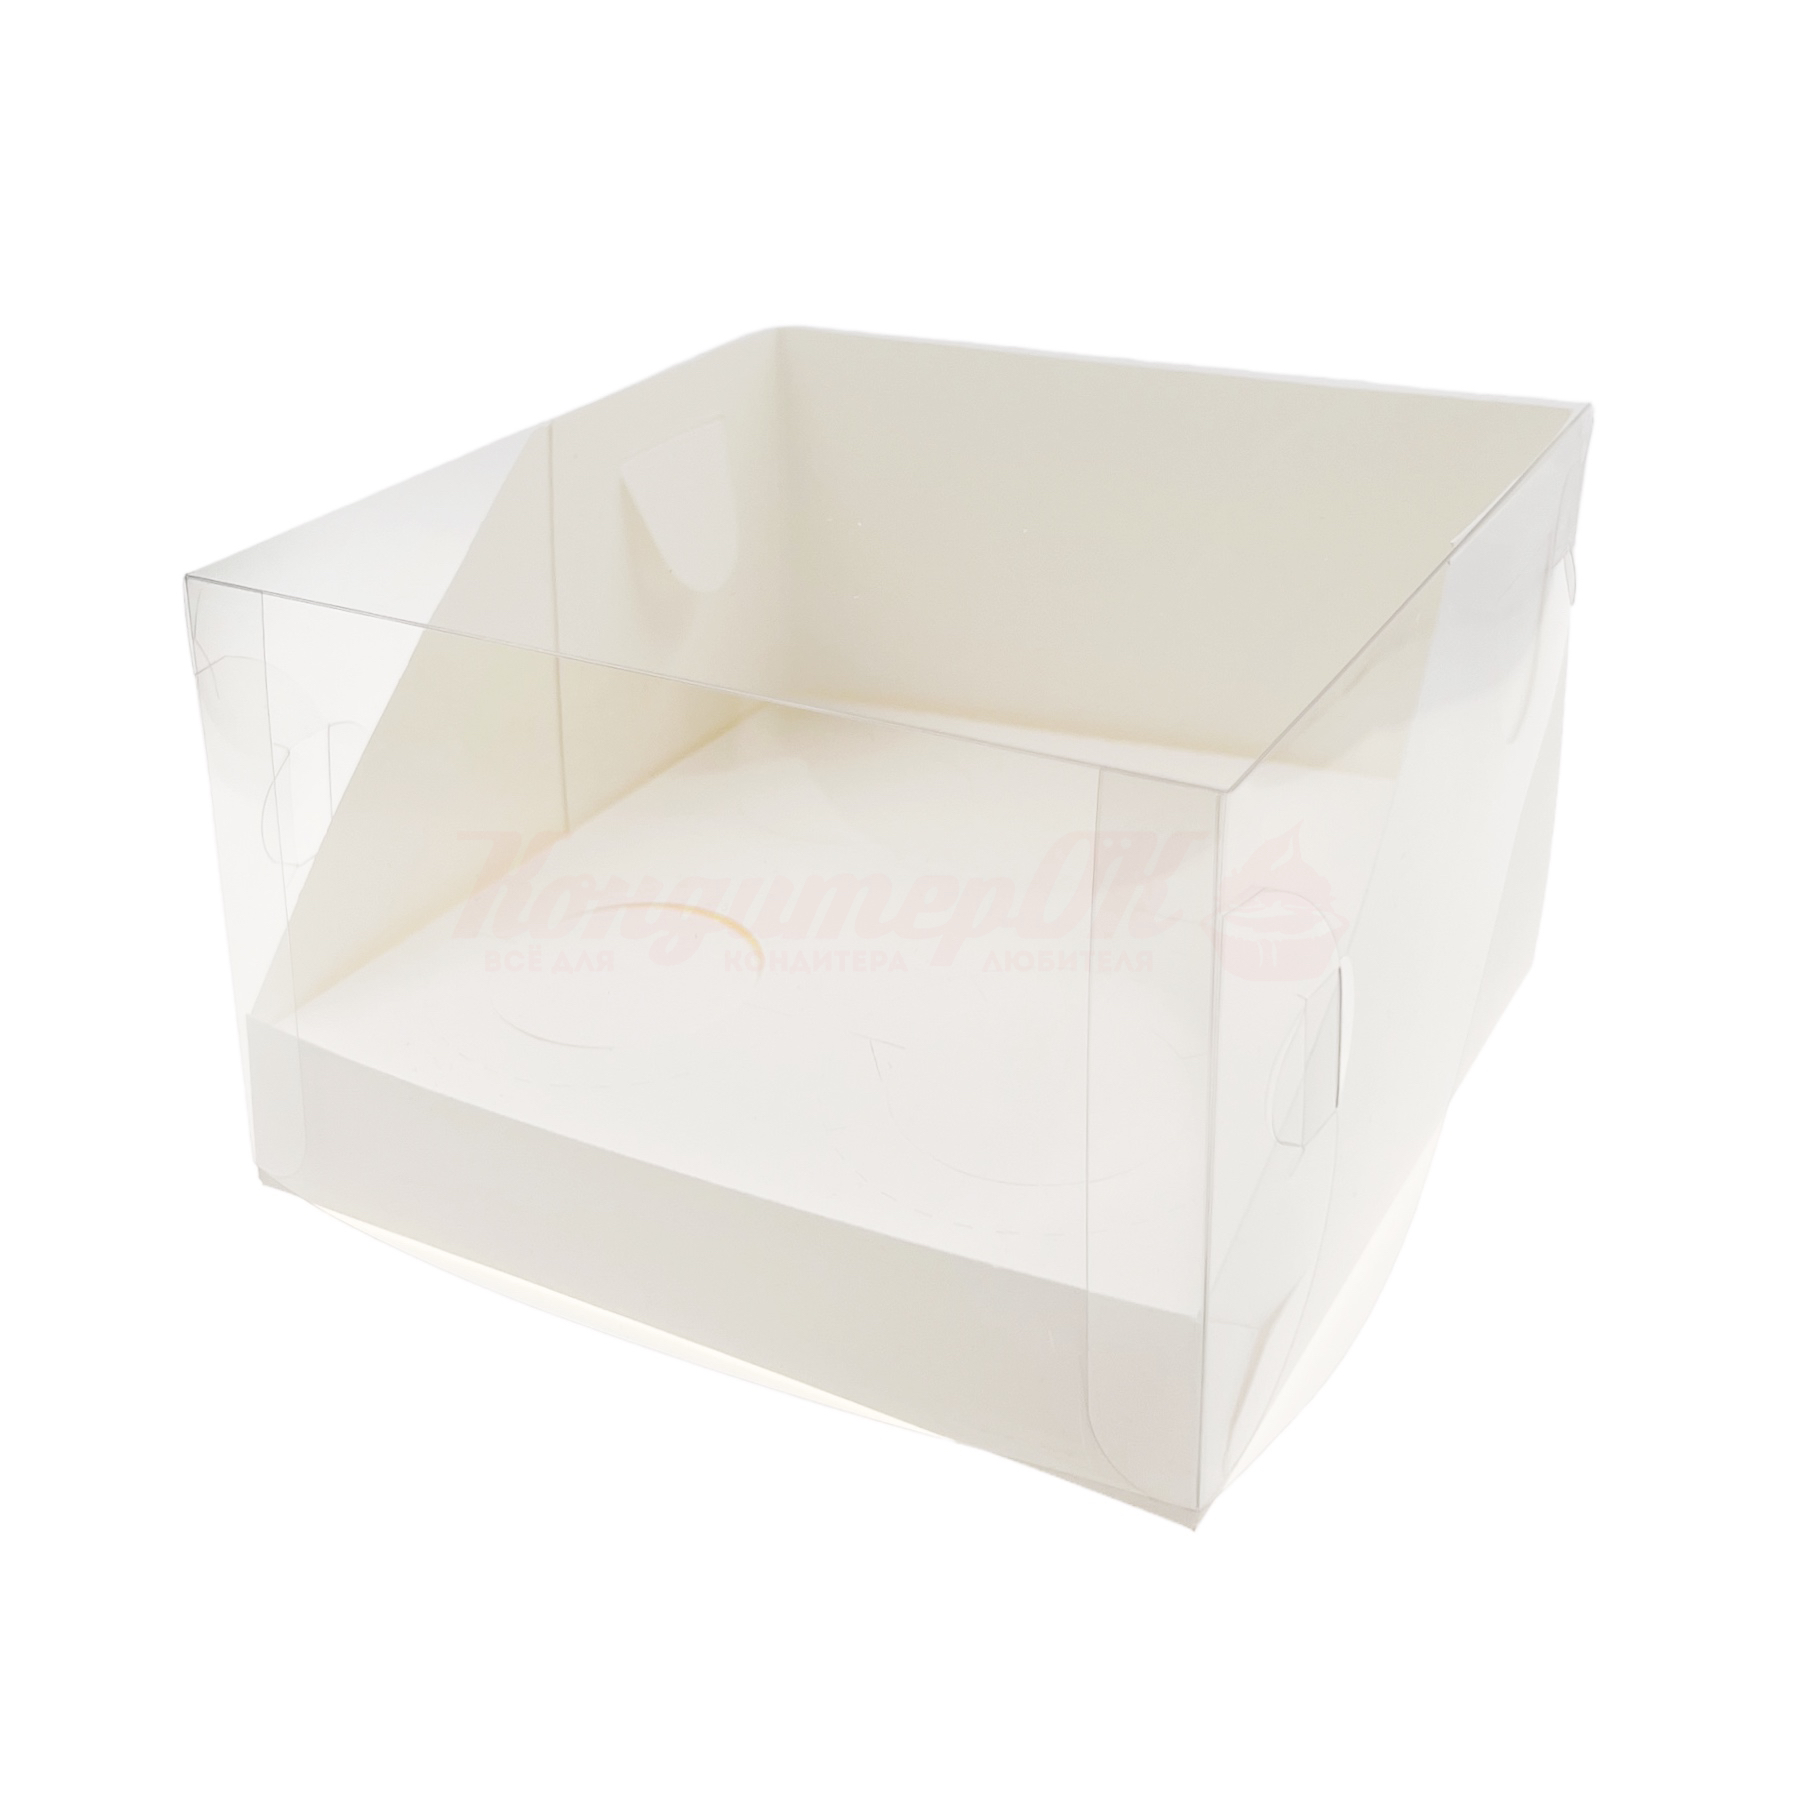 Коробка для 4 капкейков белая со скош.окном 160*160*100 мм